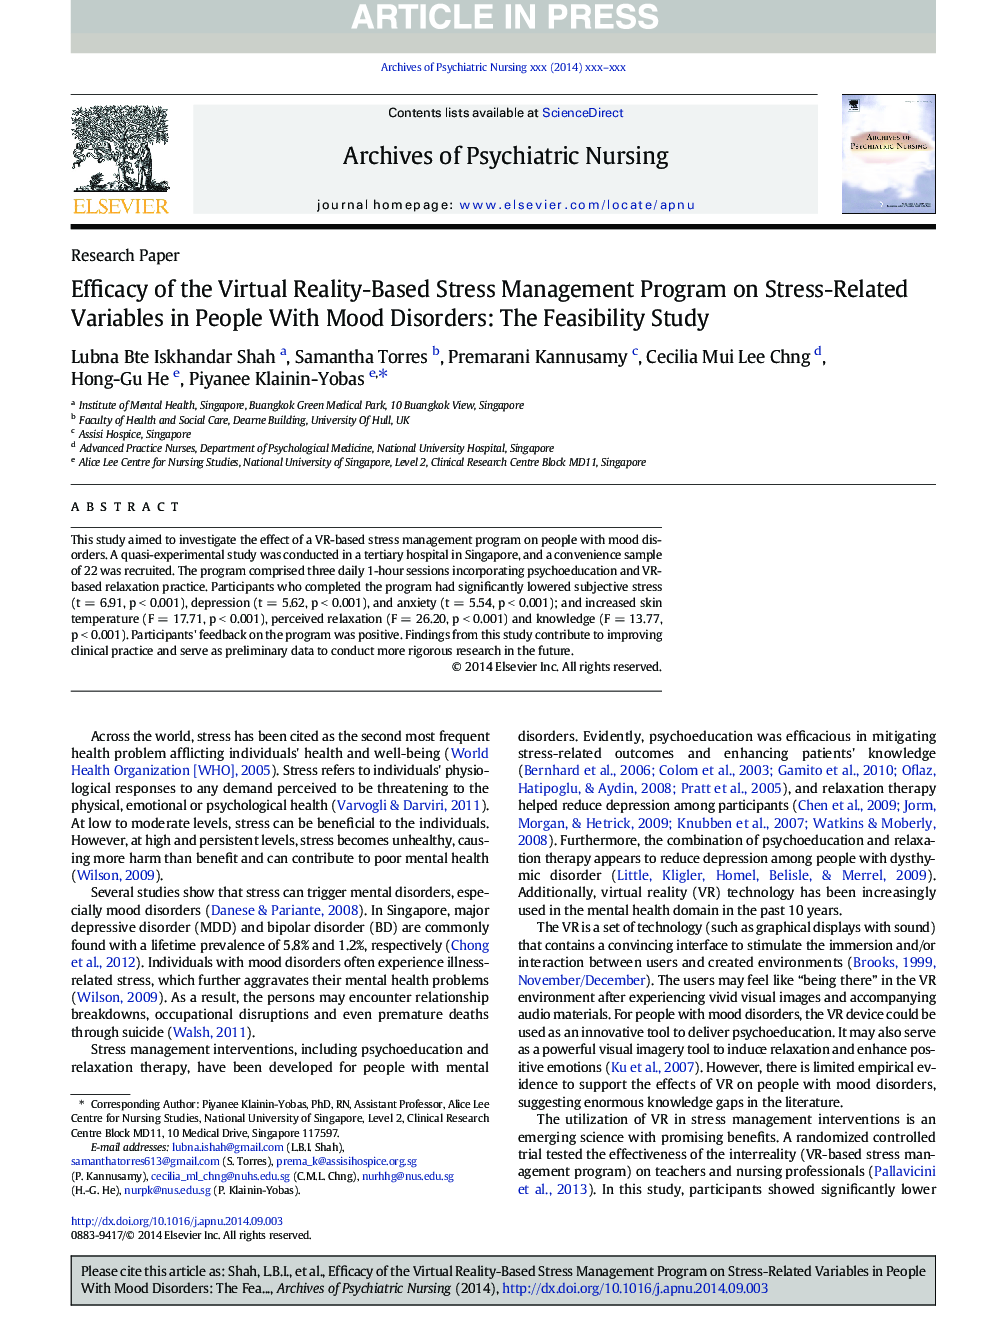 اثربخشی برنامه مدیریت استرس مبتنی بر واقعیت مجازی بر متغیرهای استرس در افراد مبتلا به اختلالات رفتاری: مطالعه امکان سنجی 